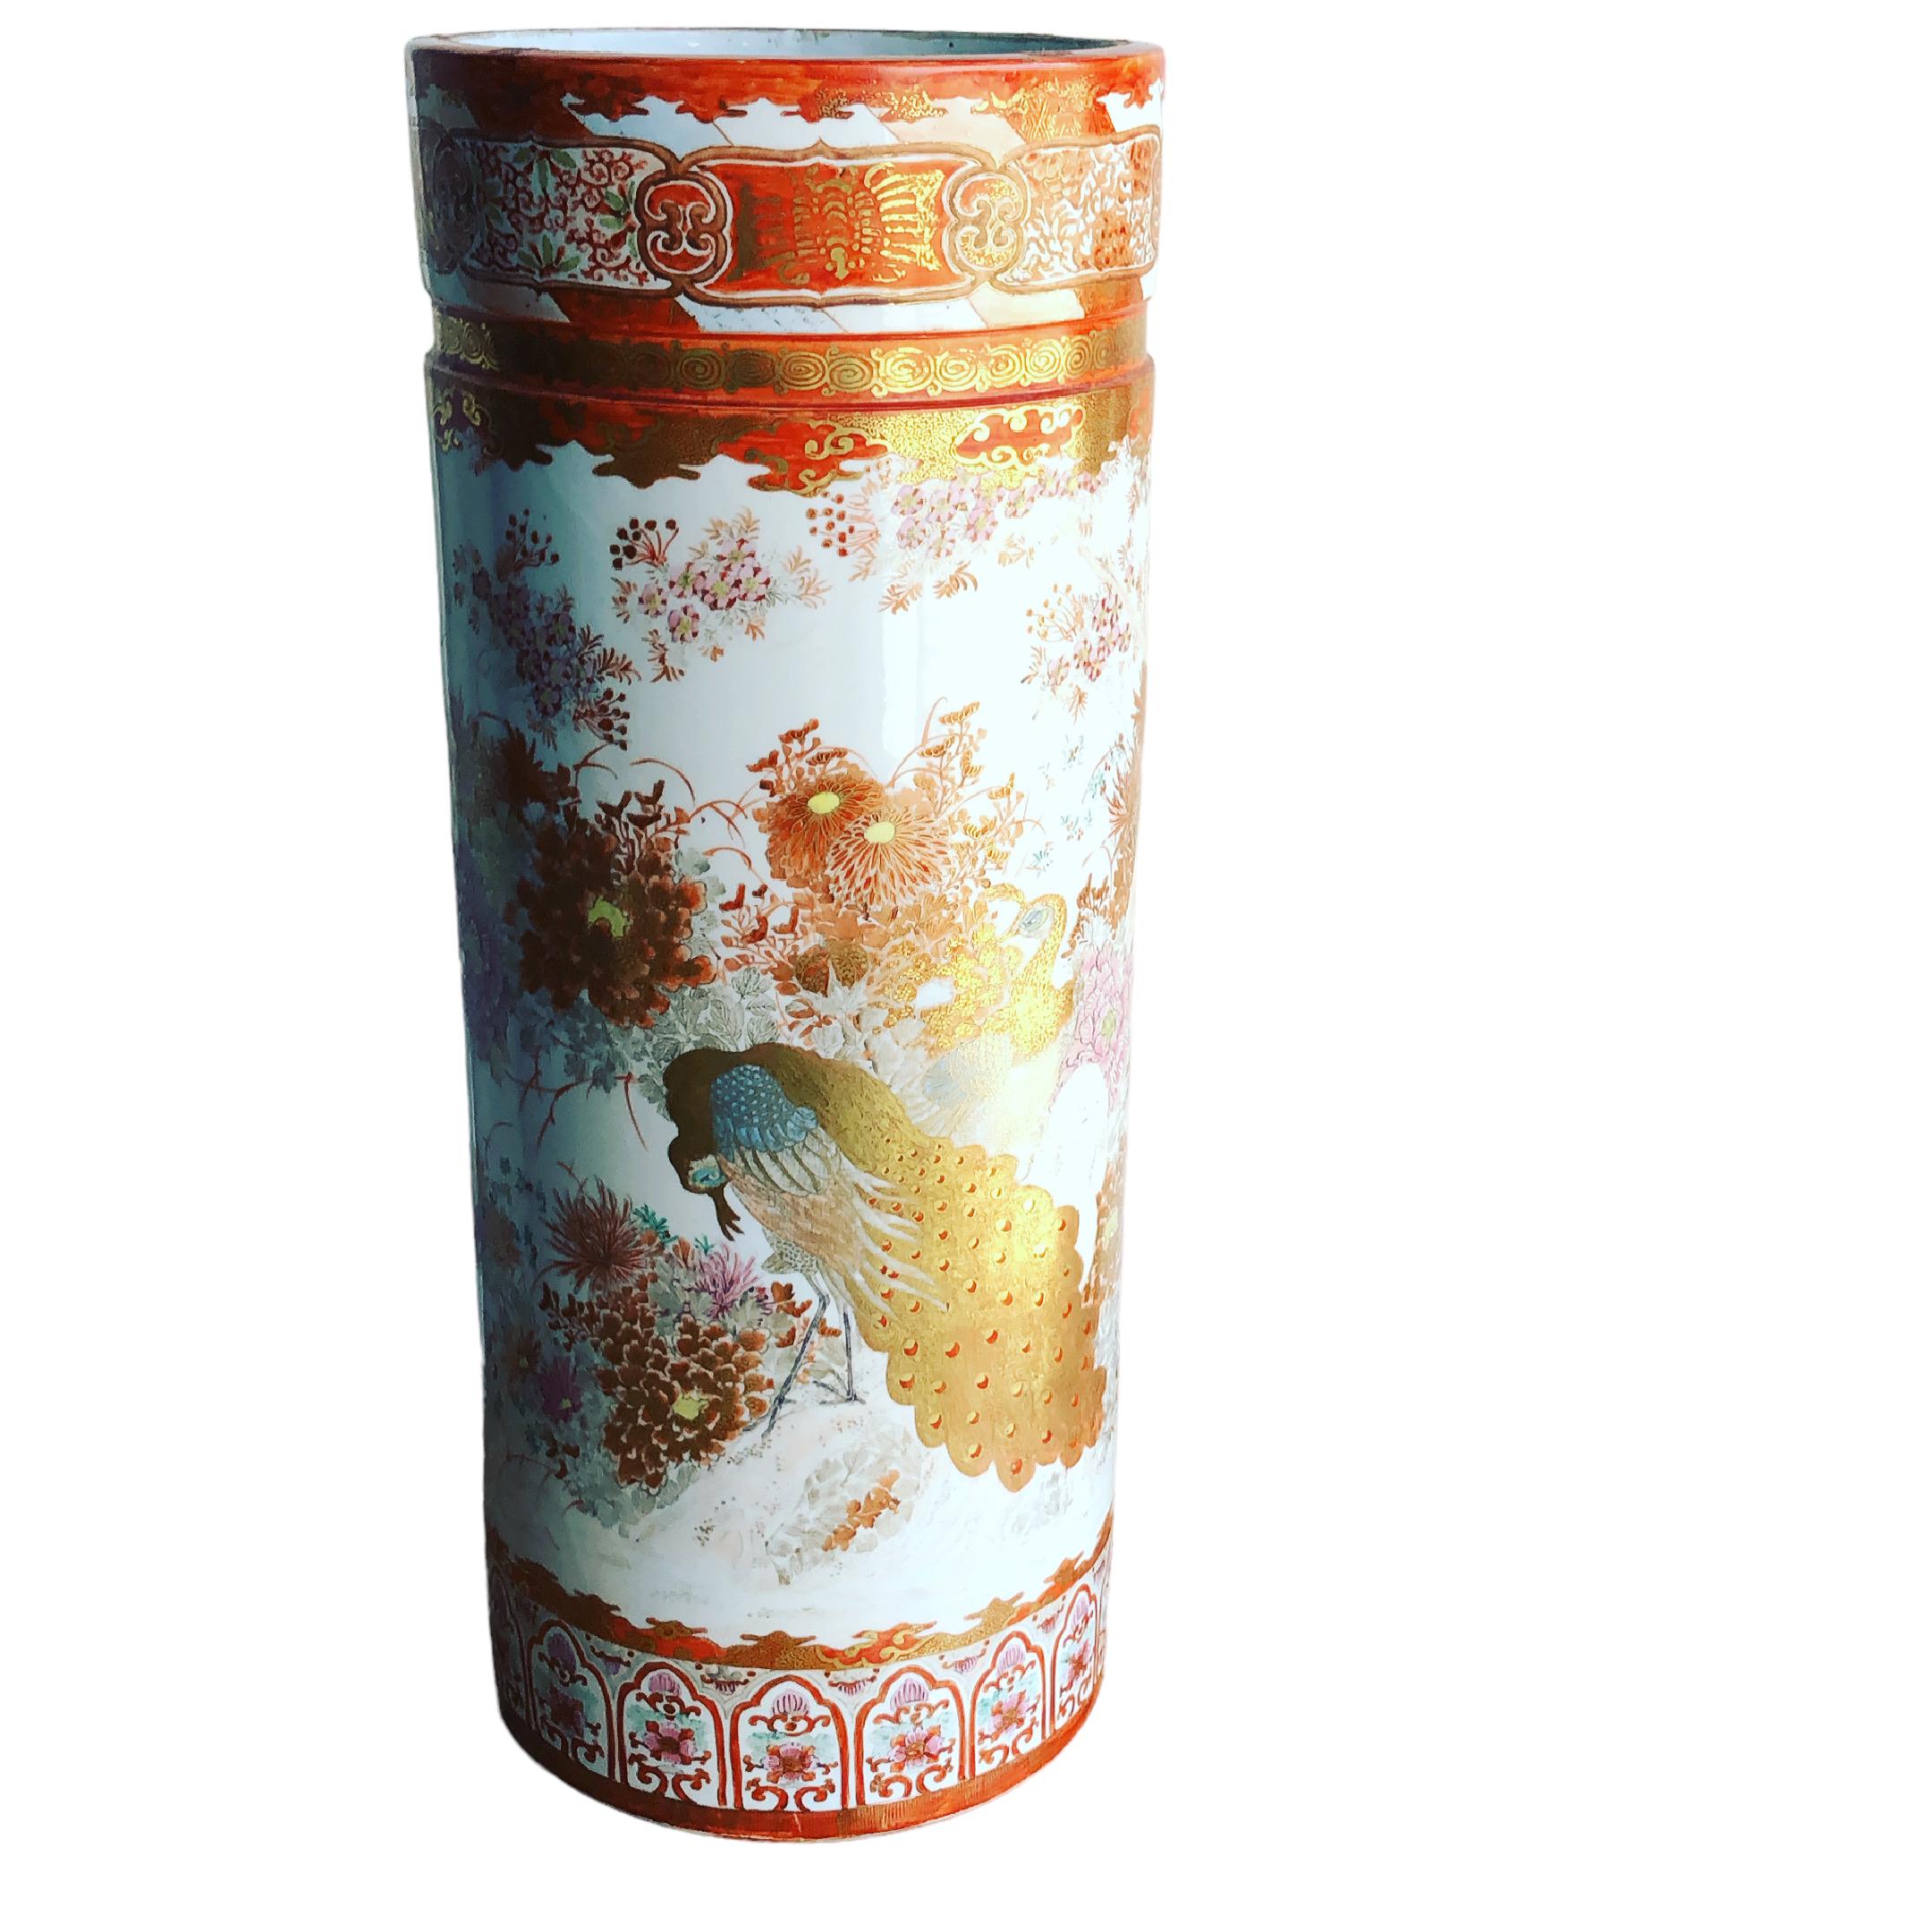 Eine gute Qualität dekorative 19. Jahrhundert japanischen Kutani Regenschirm oder Stock stehen Schön dekoriert goldenen Pfau und andere verschiedene Vögel. Es gibt auch Blumenschmuck. Der Ständer ist unten in japanischen Schriftzeichen signiert. 